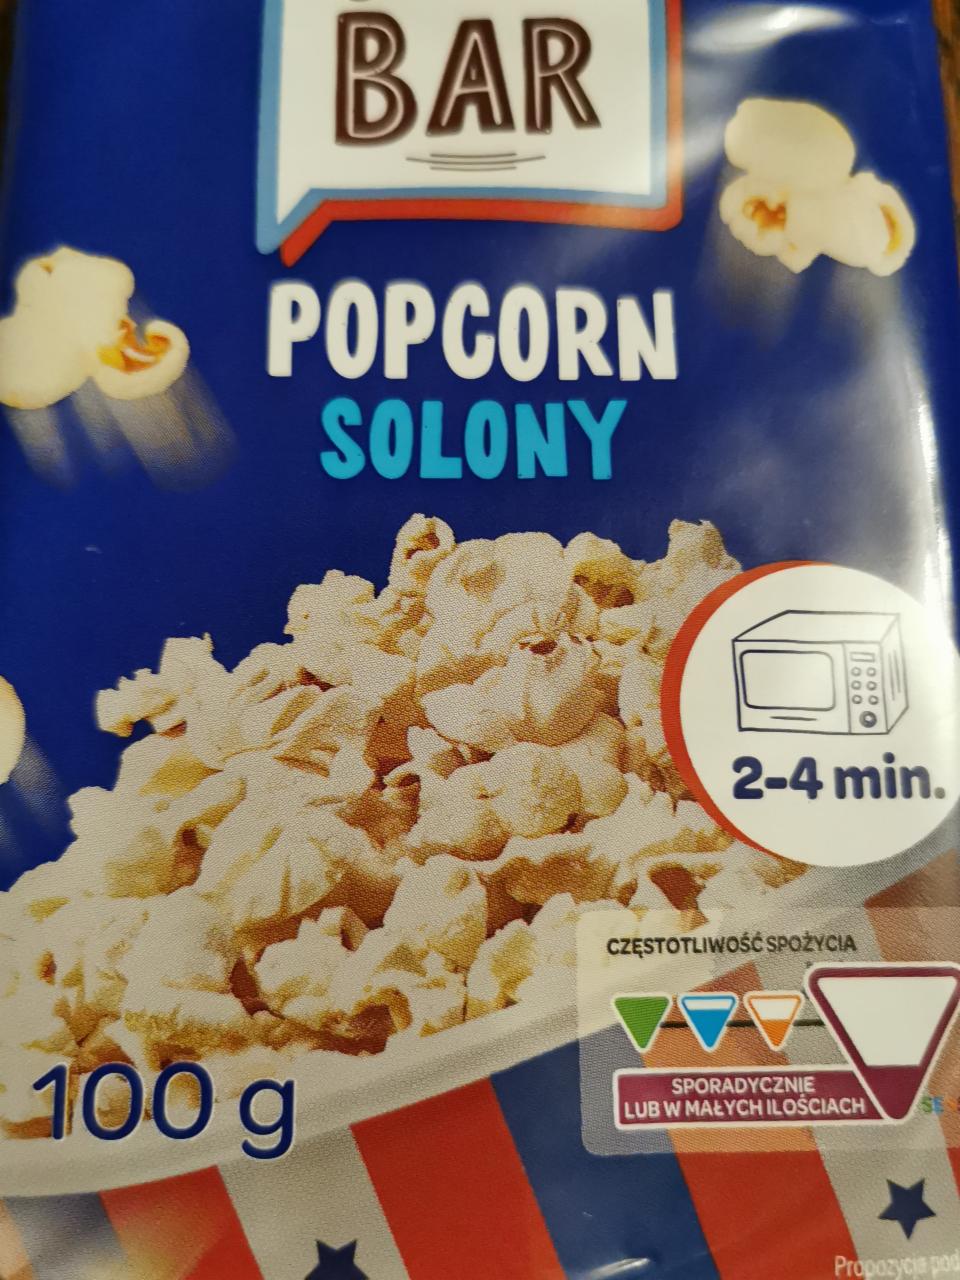 Zdjęcia - Popcorn solony Bar